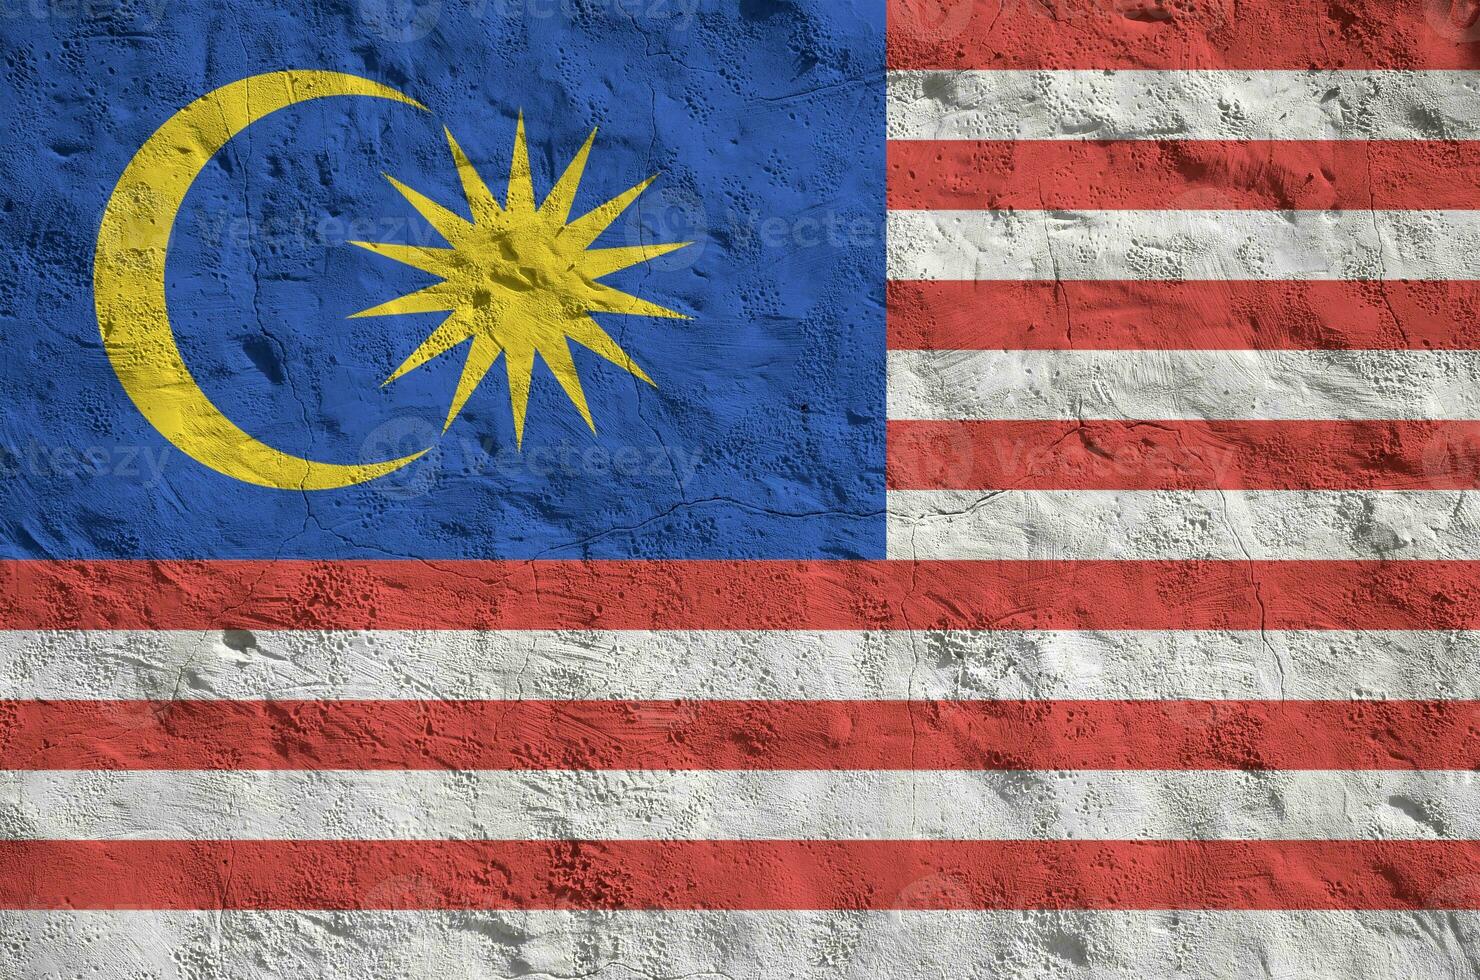 drapeau de la malaisie représenté dans des couleurs de peinture vives sur un vieux mur de plâtrage en relief. bannière texturée sur fond rugueux photo